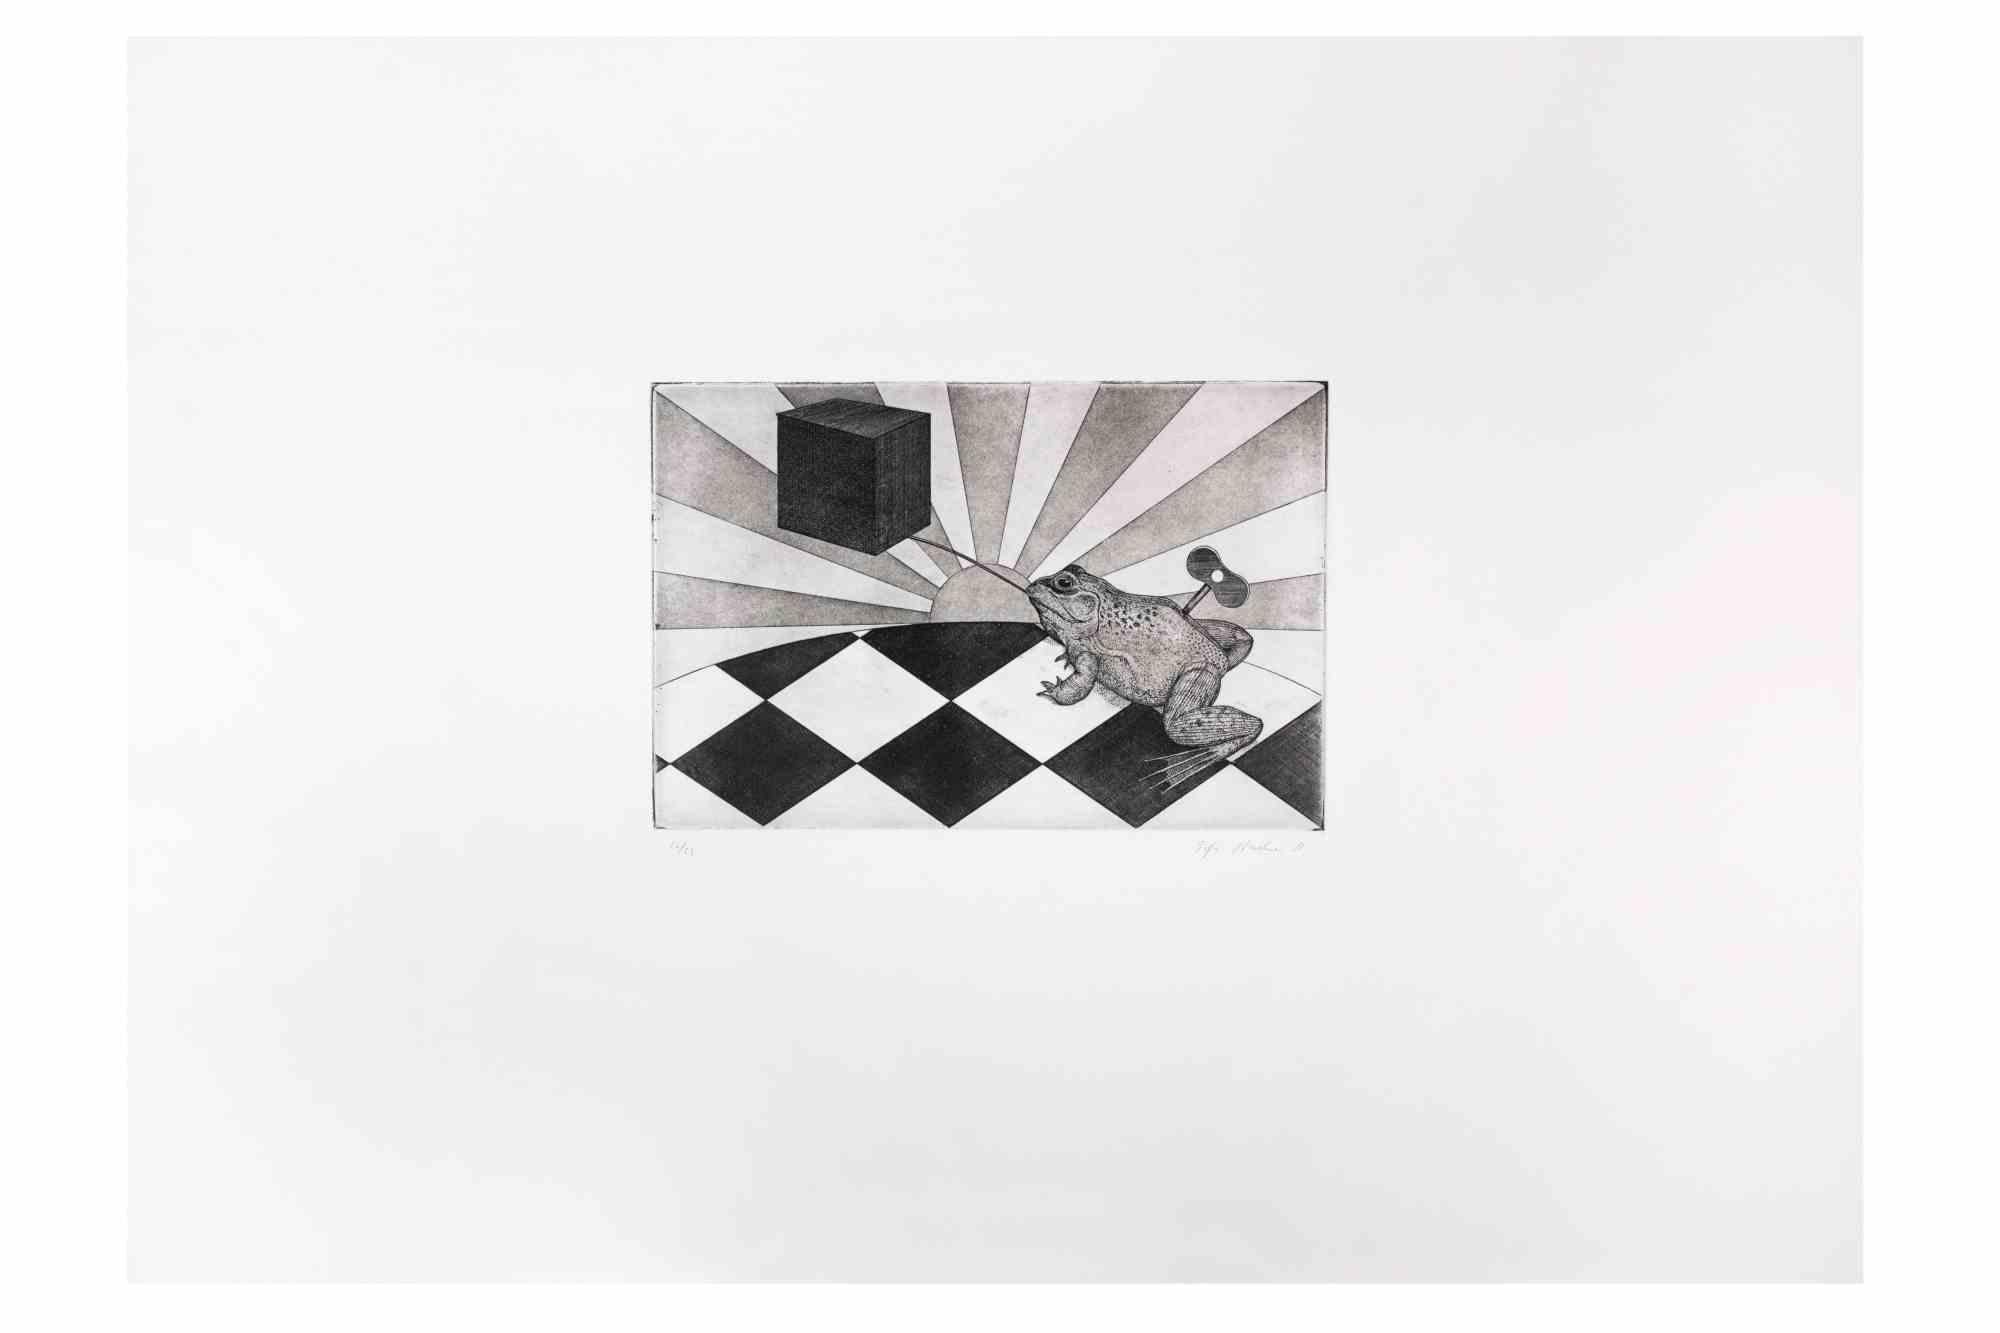 Weightlifter ist ein zeitgenössisches Kunstwerk des Künstlers Fifo Stricker aus dem Jahr 1981.

Gemischte farbige Aquatinta und Radierung. Originaltitel: Gewichtheber

Vom Künstler am unteren rechten Rand handsigniert und datiert.

Am unteren linken